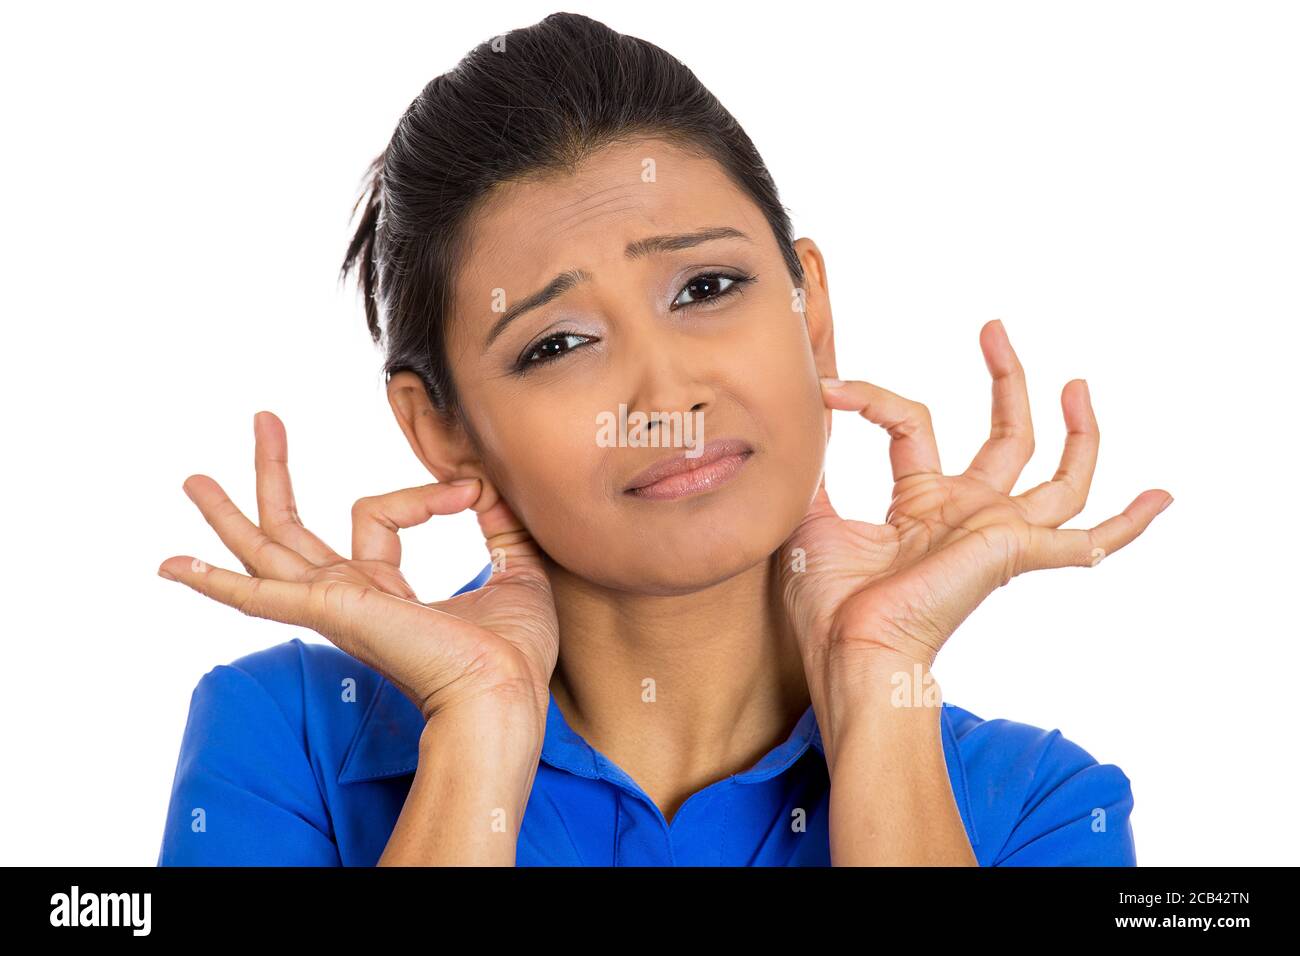 Ritratto closeup di una giovane donna che tira le orecchie di presa spiacente per quello che ha fatto, isolato su sfondo bianco. Emozioni umane negative, espressioni facciali Foto Stock